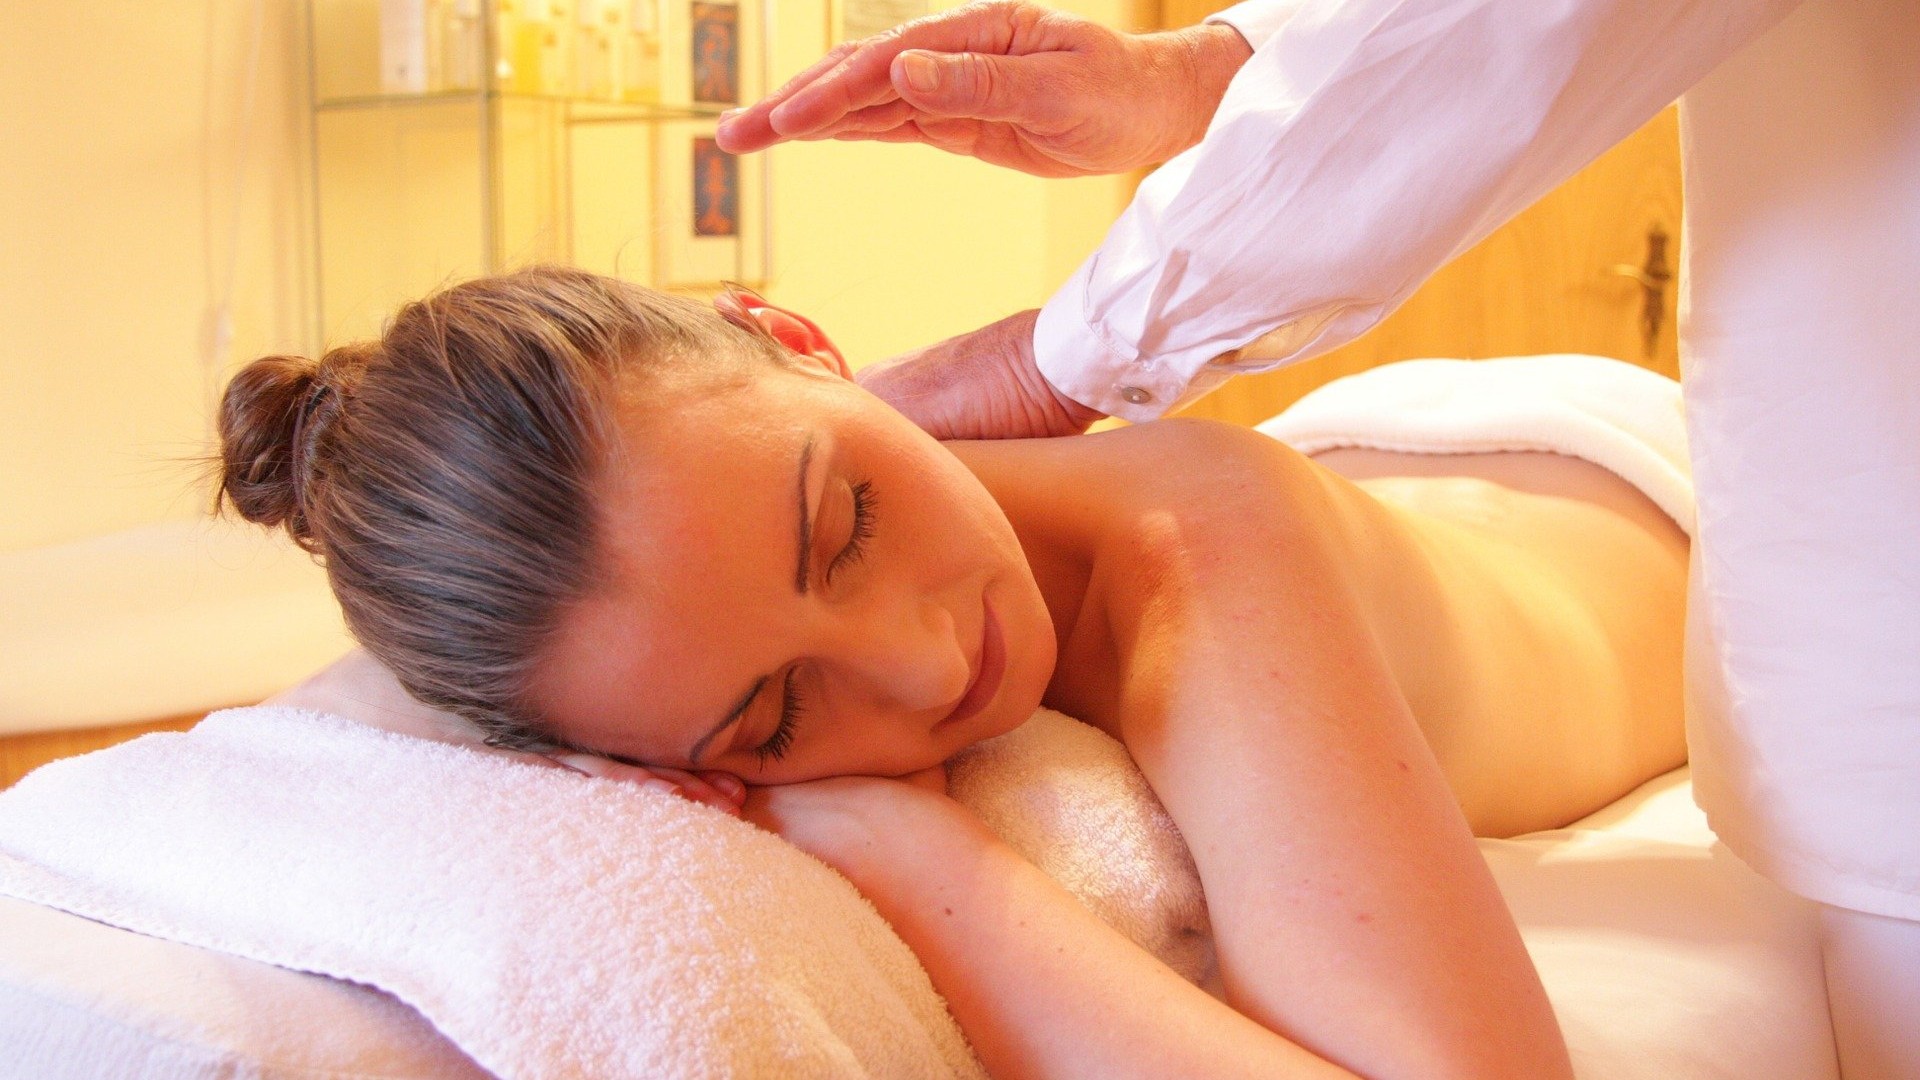 Foto de capa do artigo "Massagem modeladora: confira os principais benefícios da técnica"